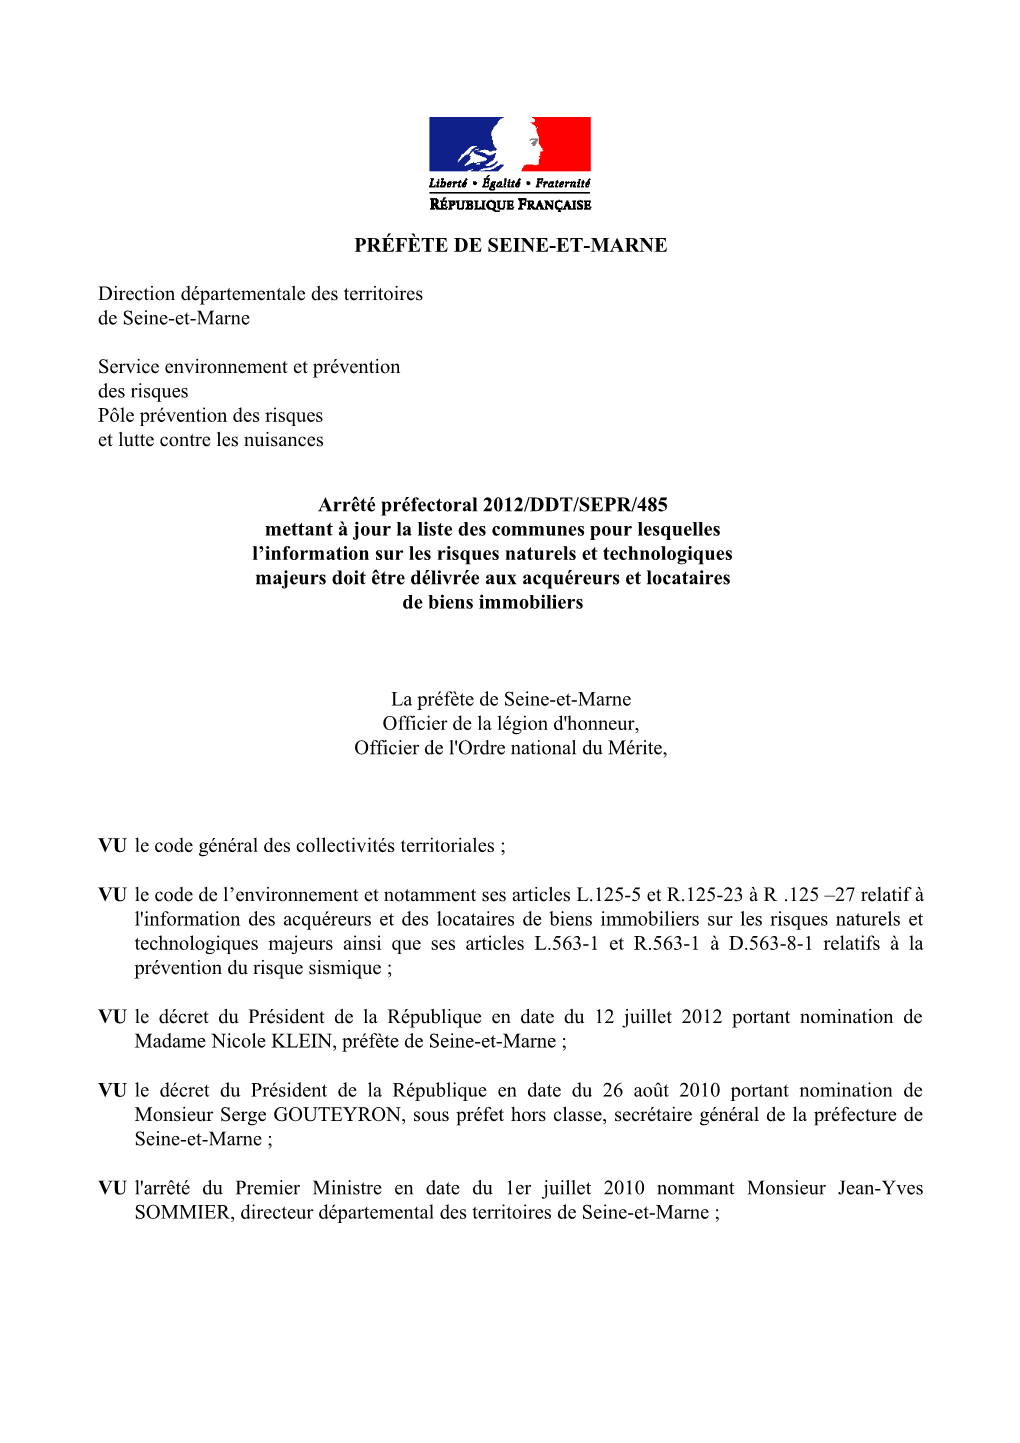 Arrêté Préfectoral 2012/DDT/SEPR N° 485 Du 22 Août 2012